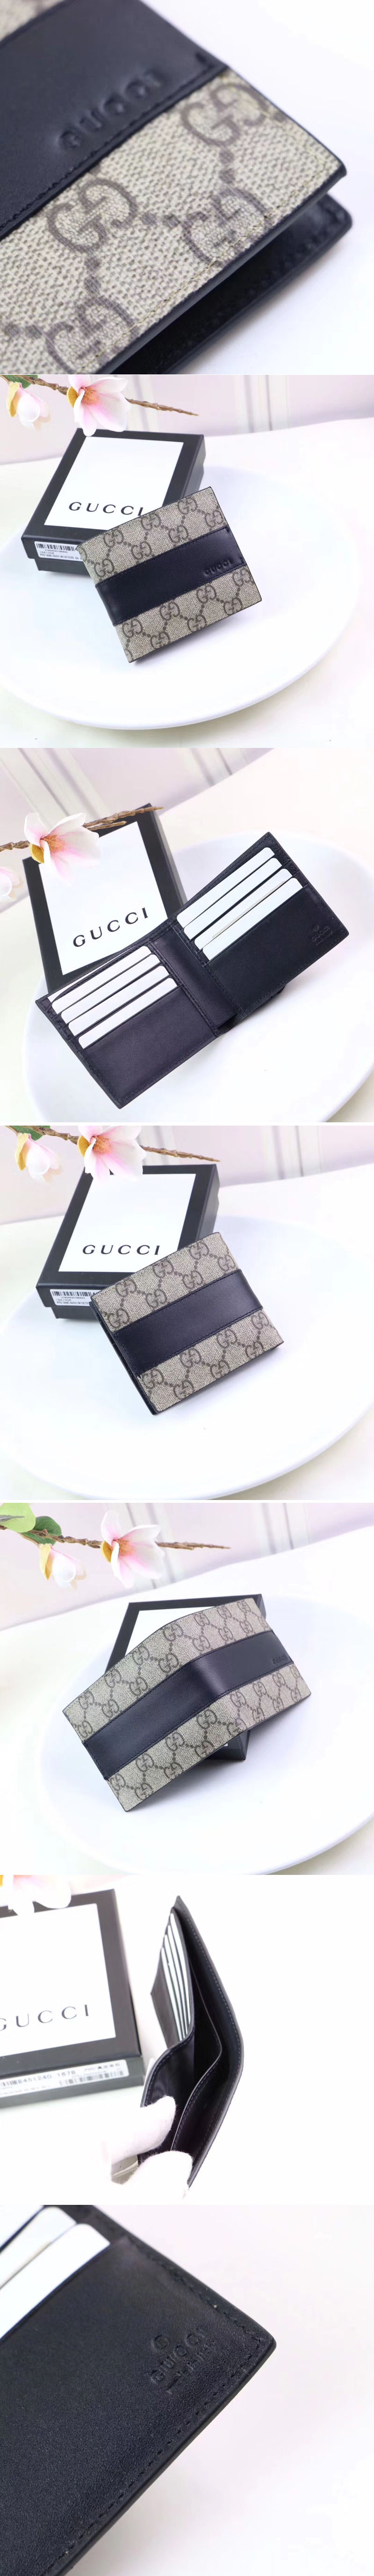 Replica Gucci 451240 GG Supreme wallet